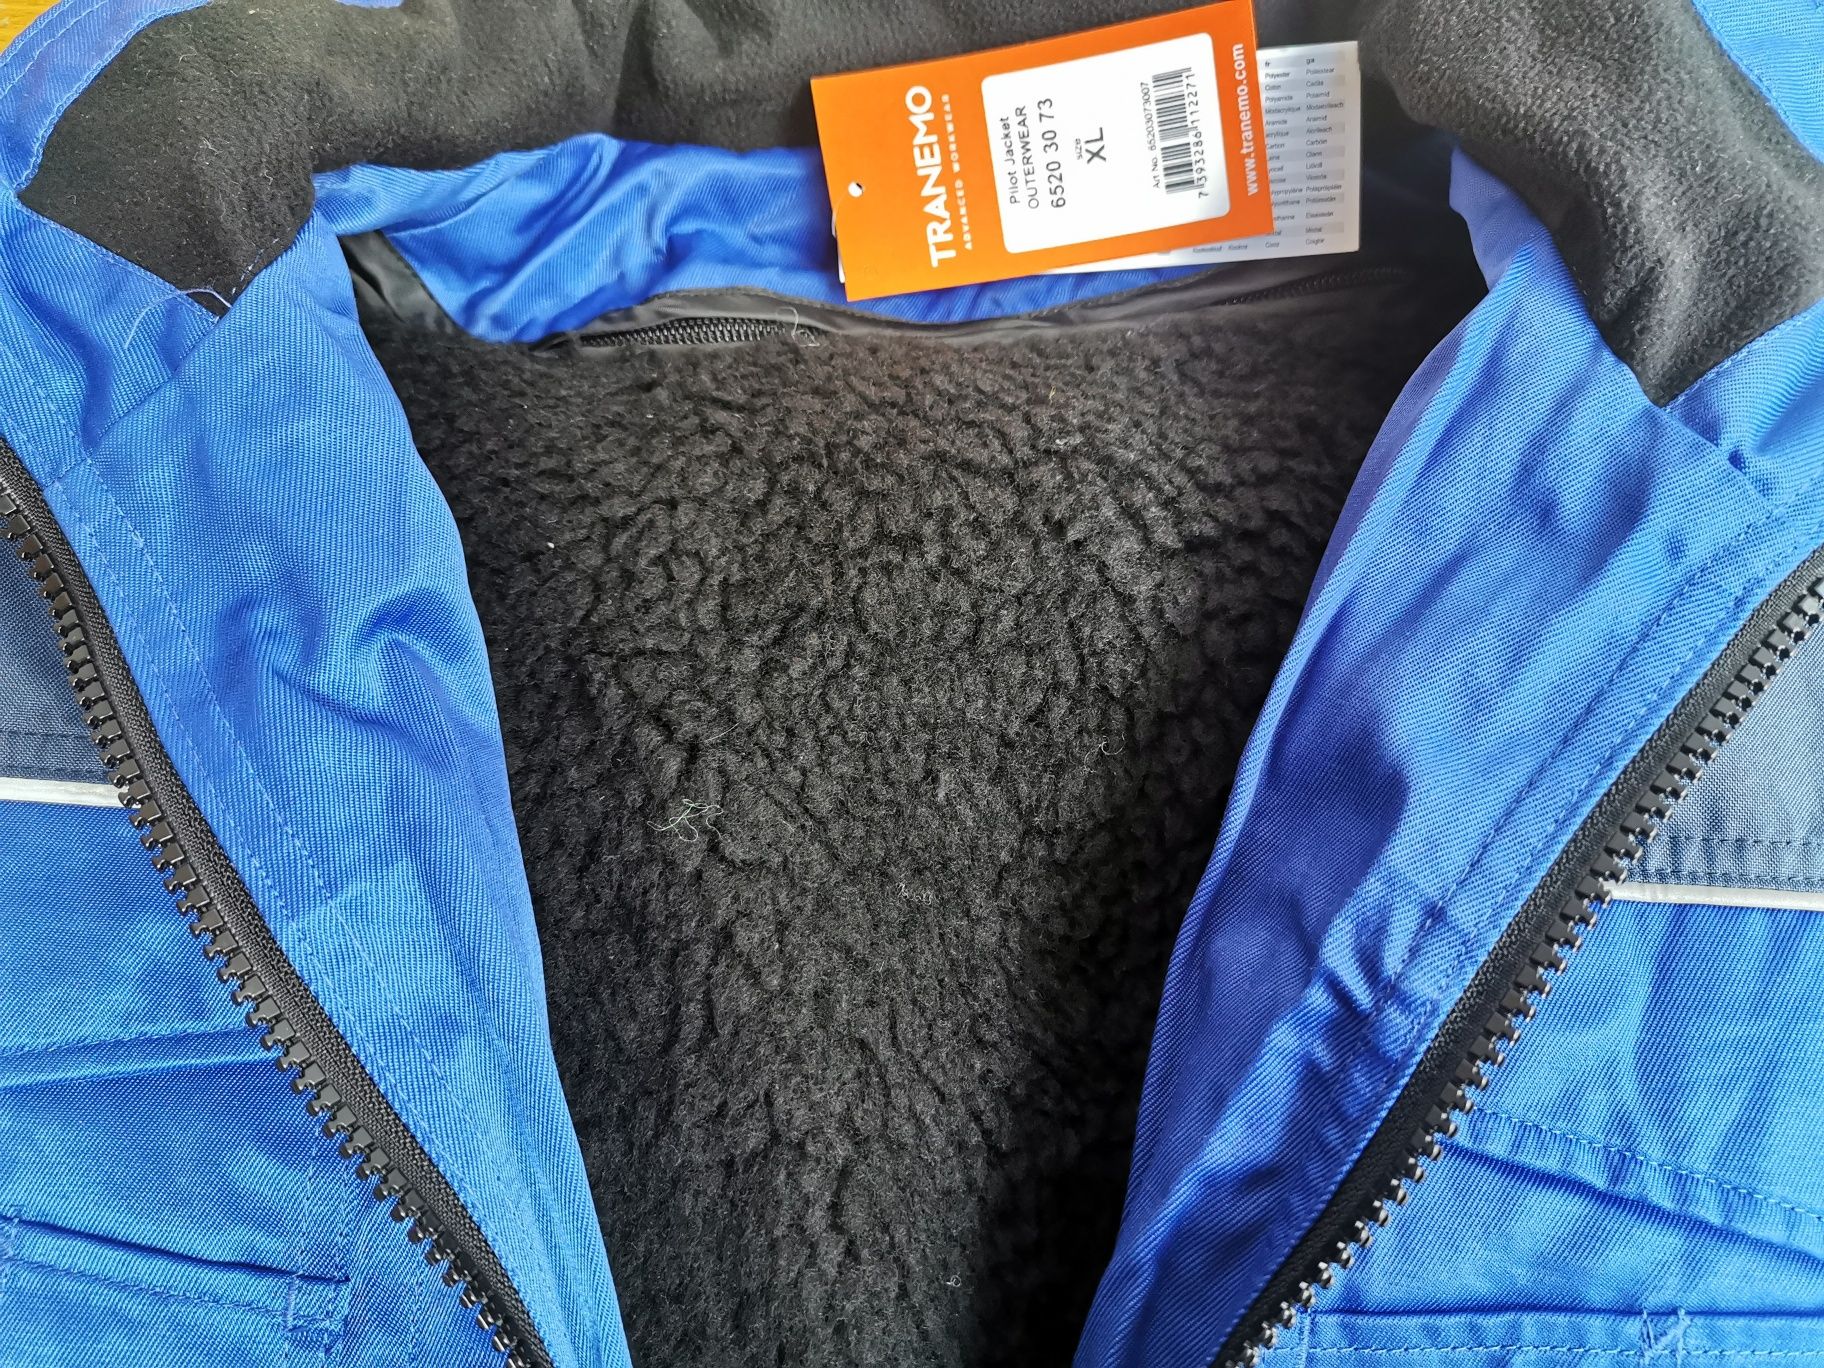 Работно яке TRANEMO Pilot jacket 3 в 1  размер XL